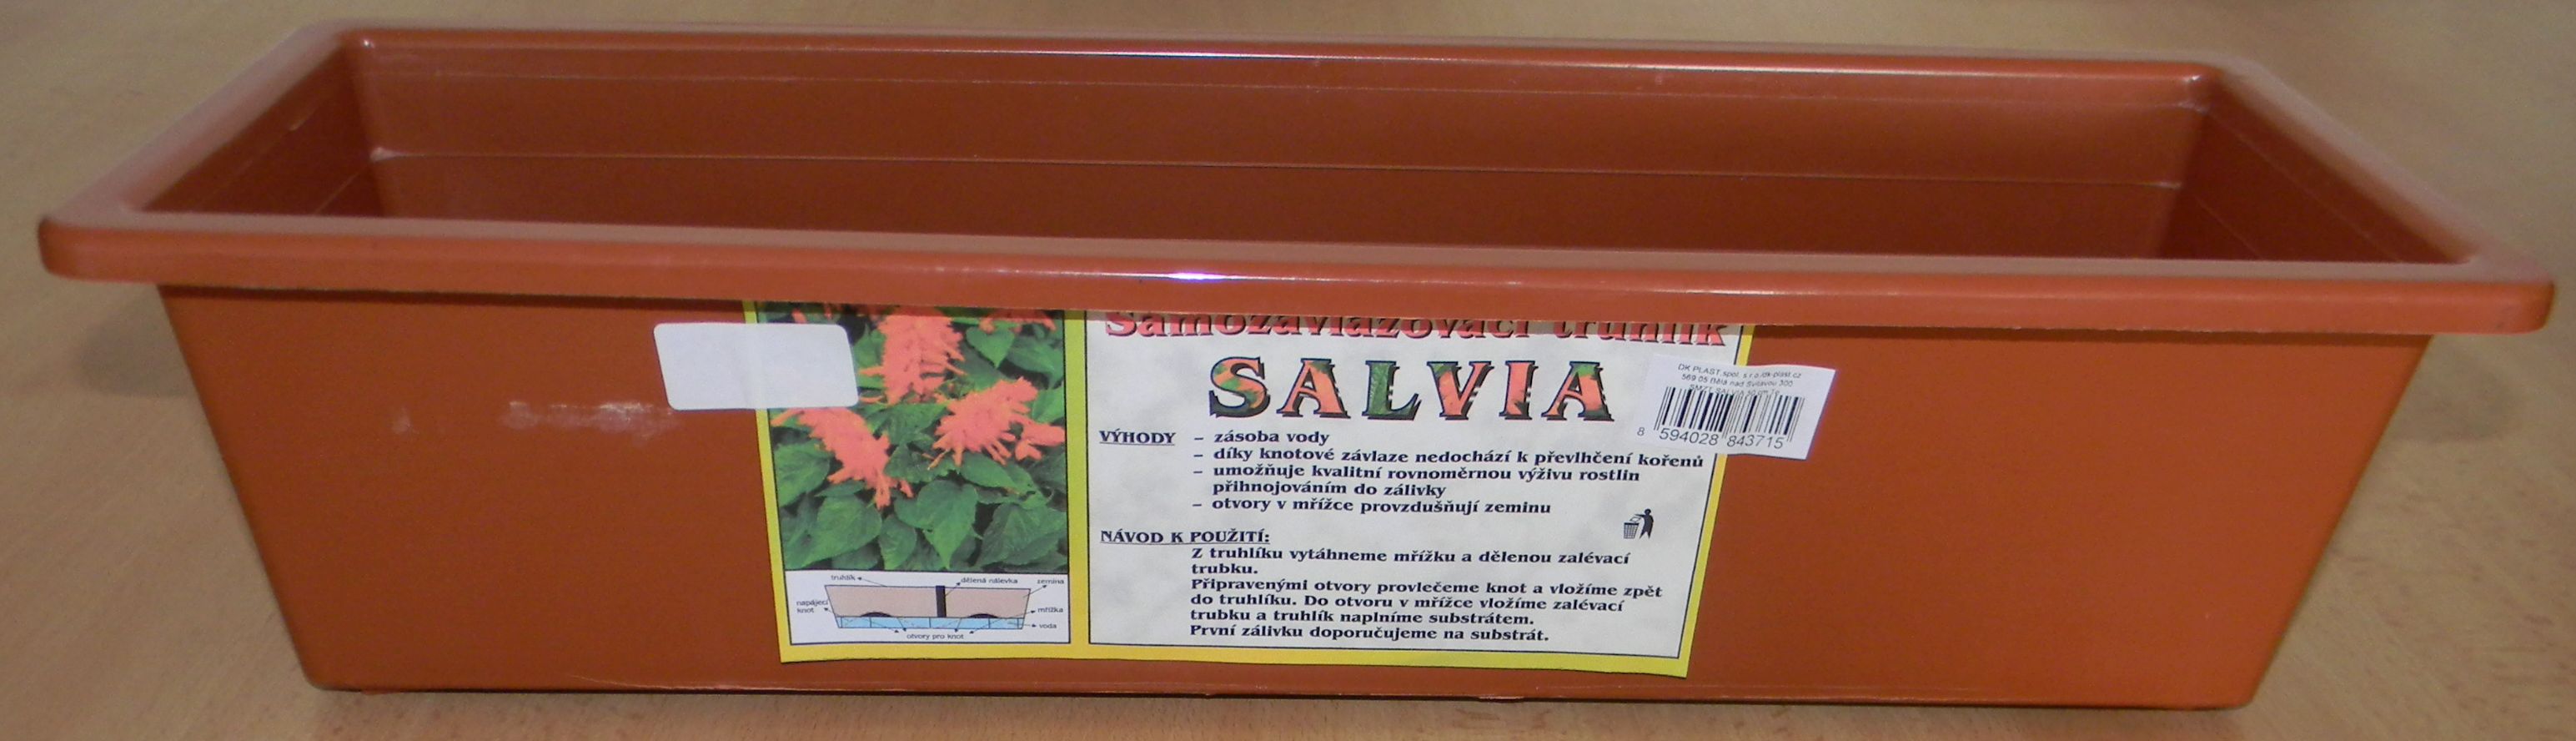 Truhlík samozavlažovací 60 cm terakota Salvia